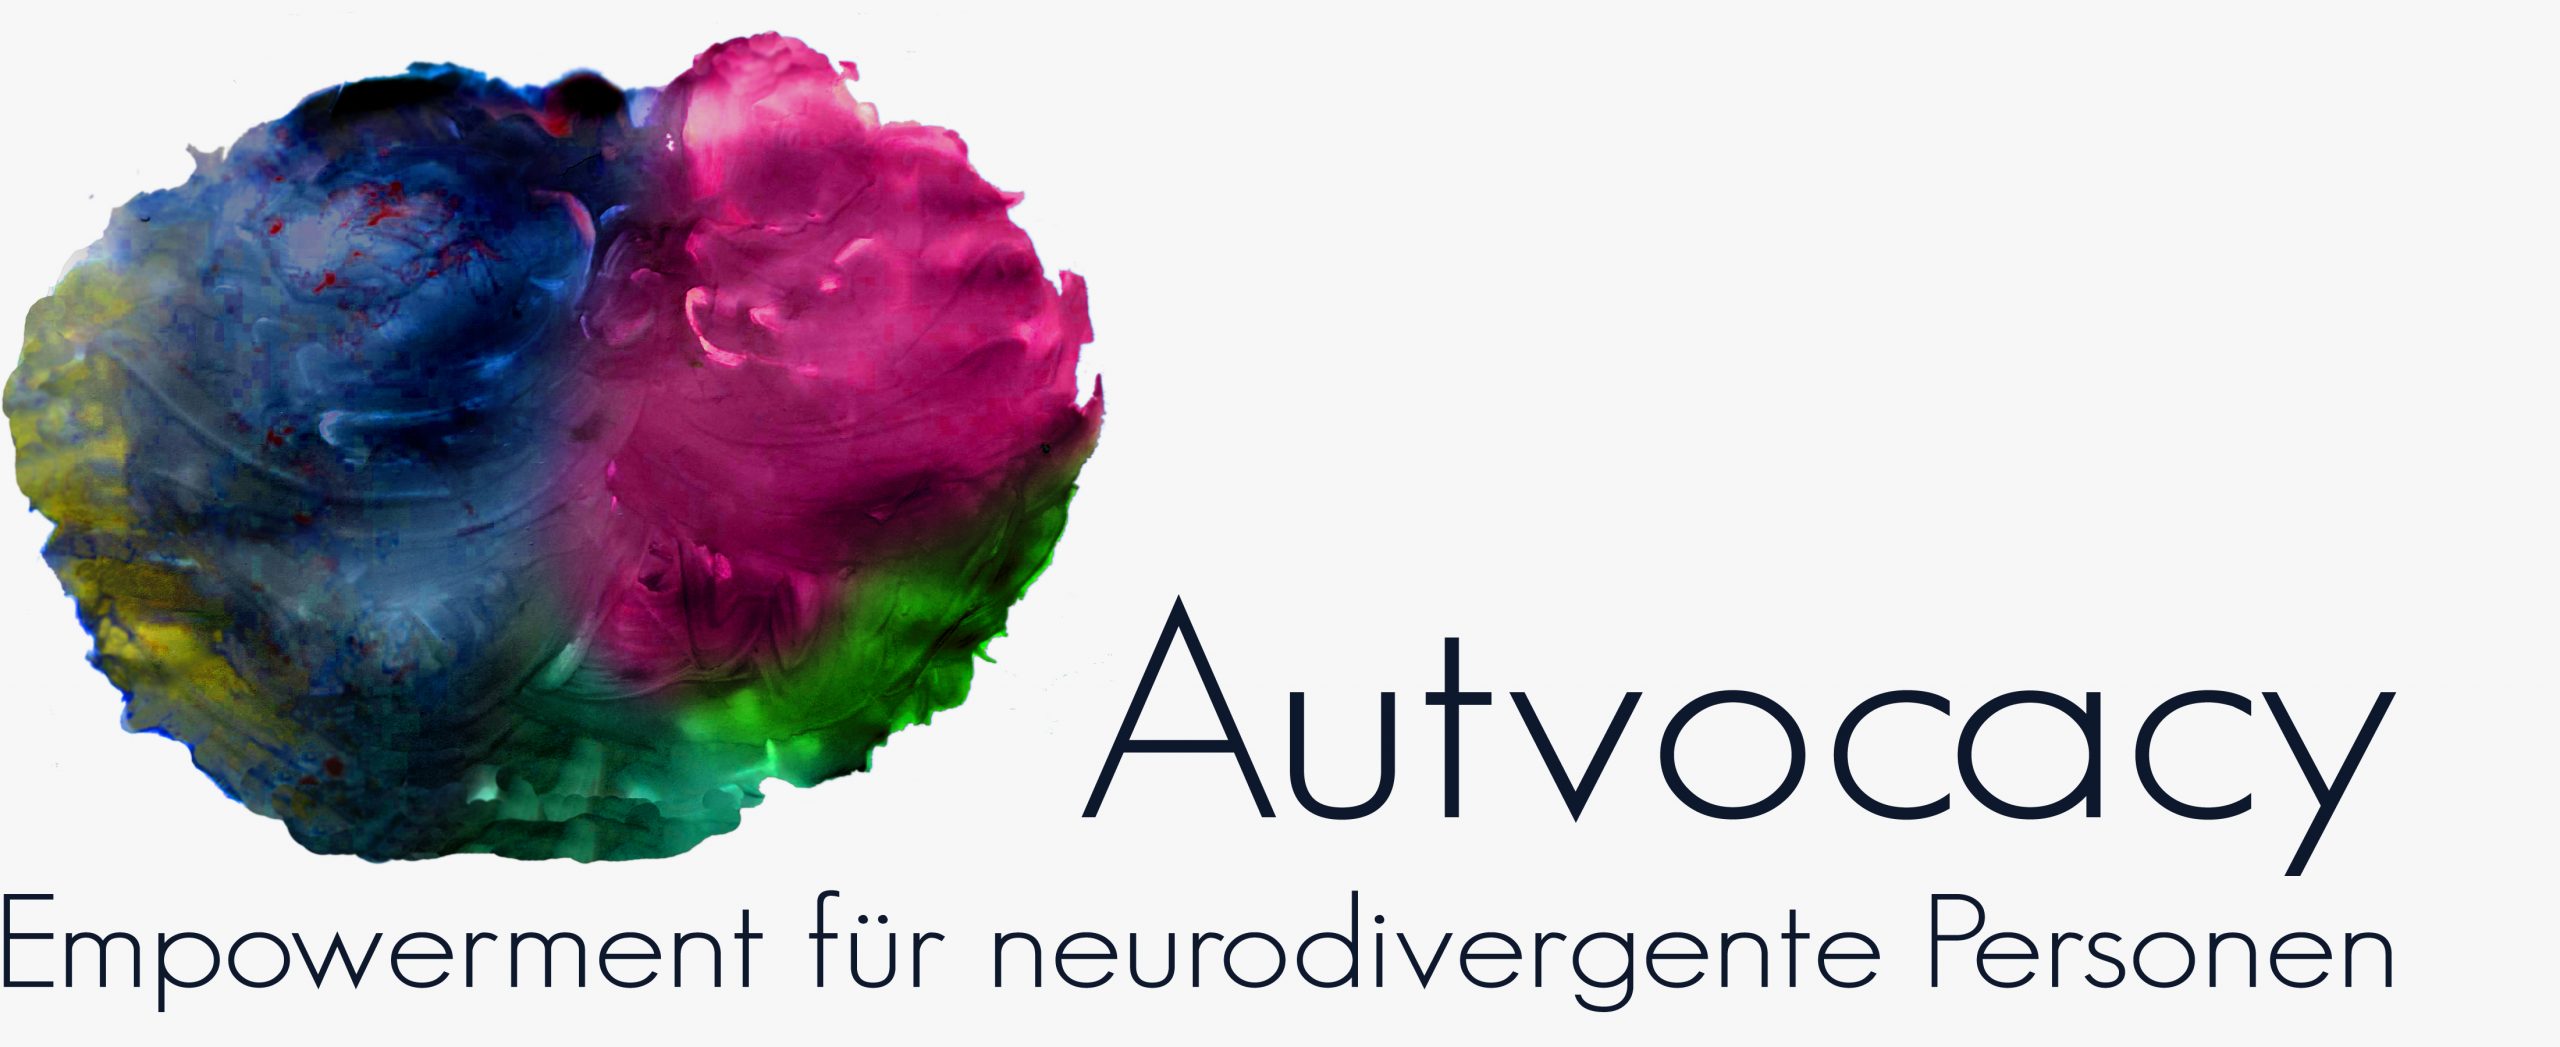 Logo von Autvocacy – Farbflecken in blau, magenta, grün und gelb, die mich an Bilder von menschlichen Gehirnen erinnern. Daneben der Text: Autvocacy – Empowerment für neurodivergente Personen.